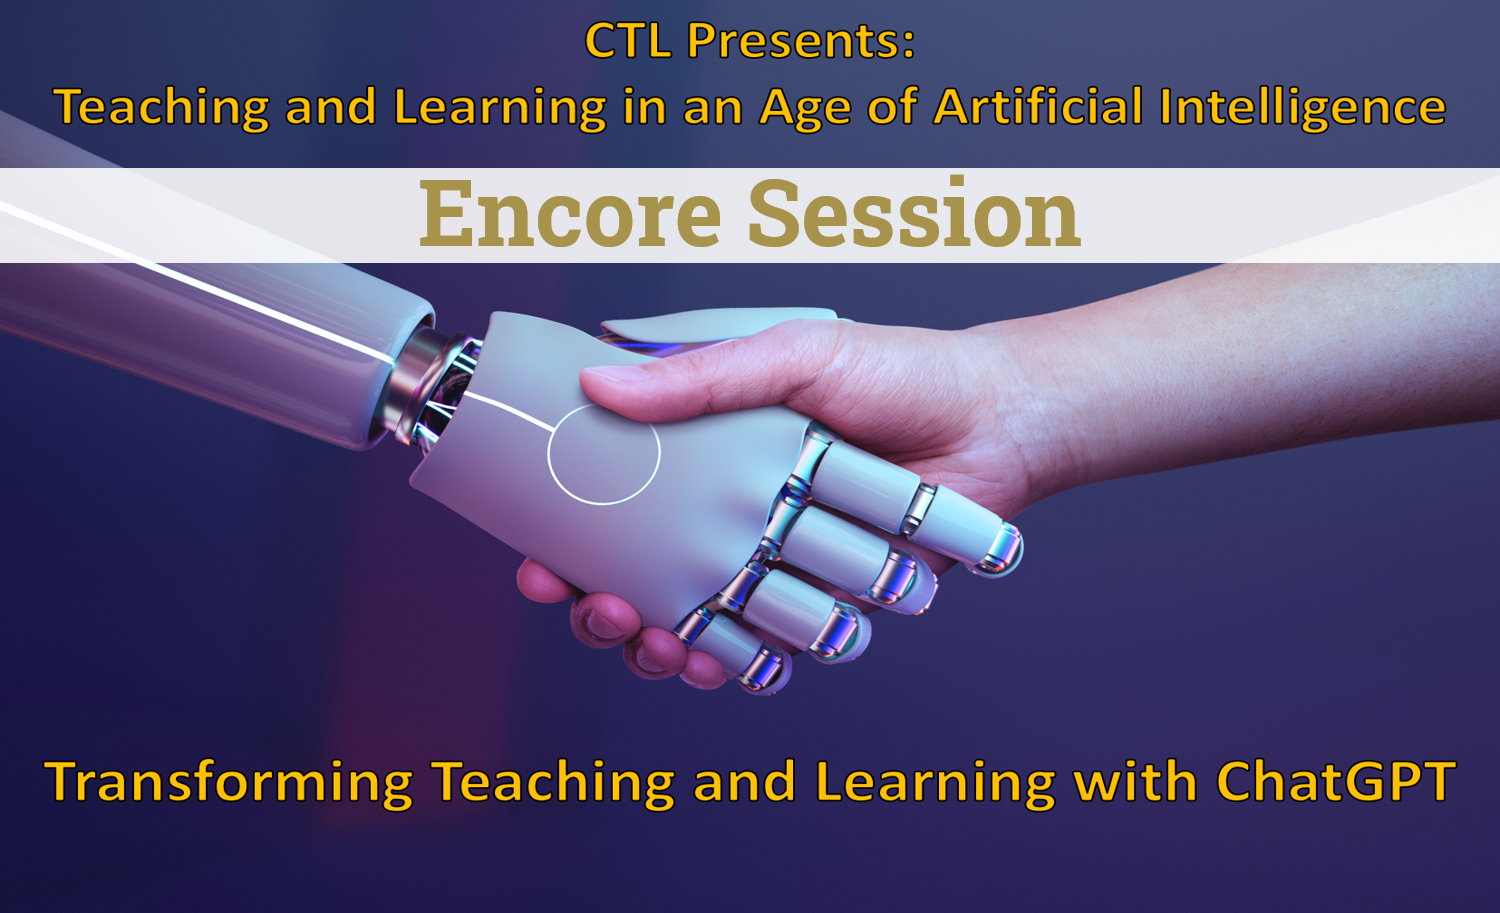 CTL Presents: Teaching and Learning in an Age of Artificial Intelligence. Transforming Teaching and Learning with ChatGPT 